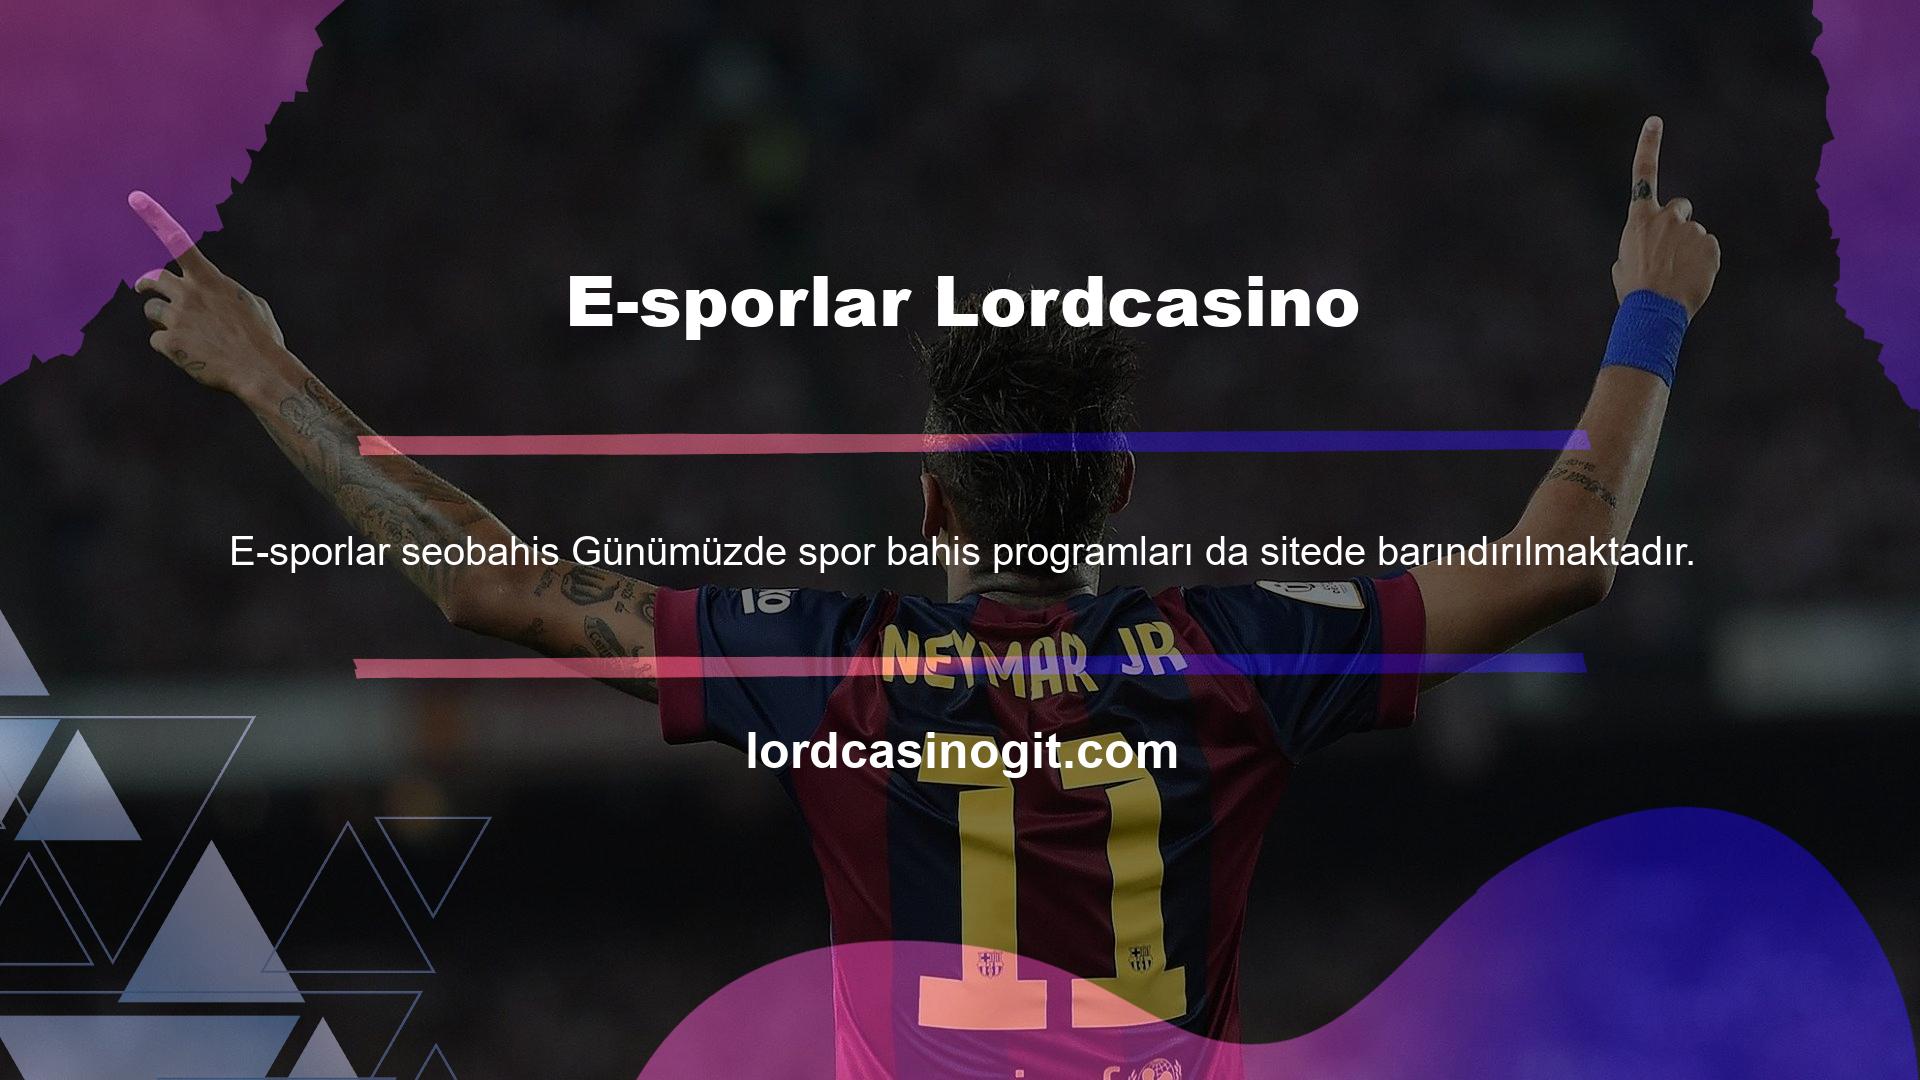 Lordcasino E-sporlarını izleme olanağına, sitede Canlı TV kullanılarak erişilebilir